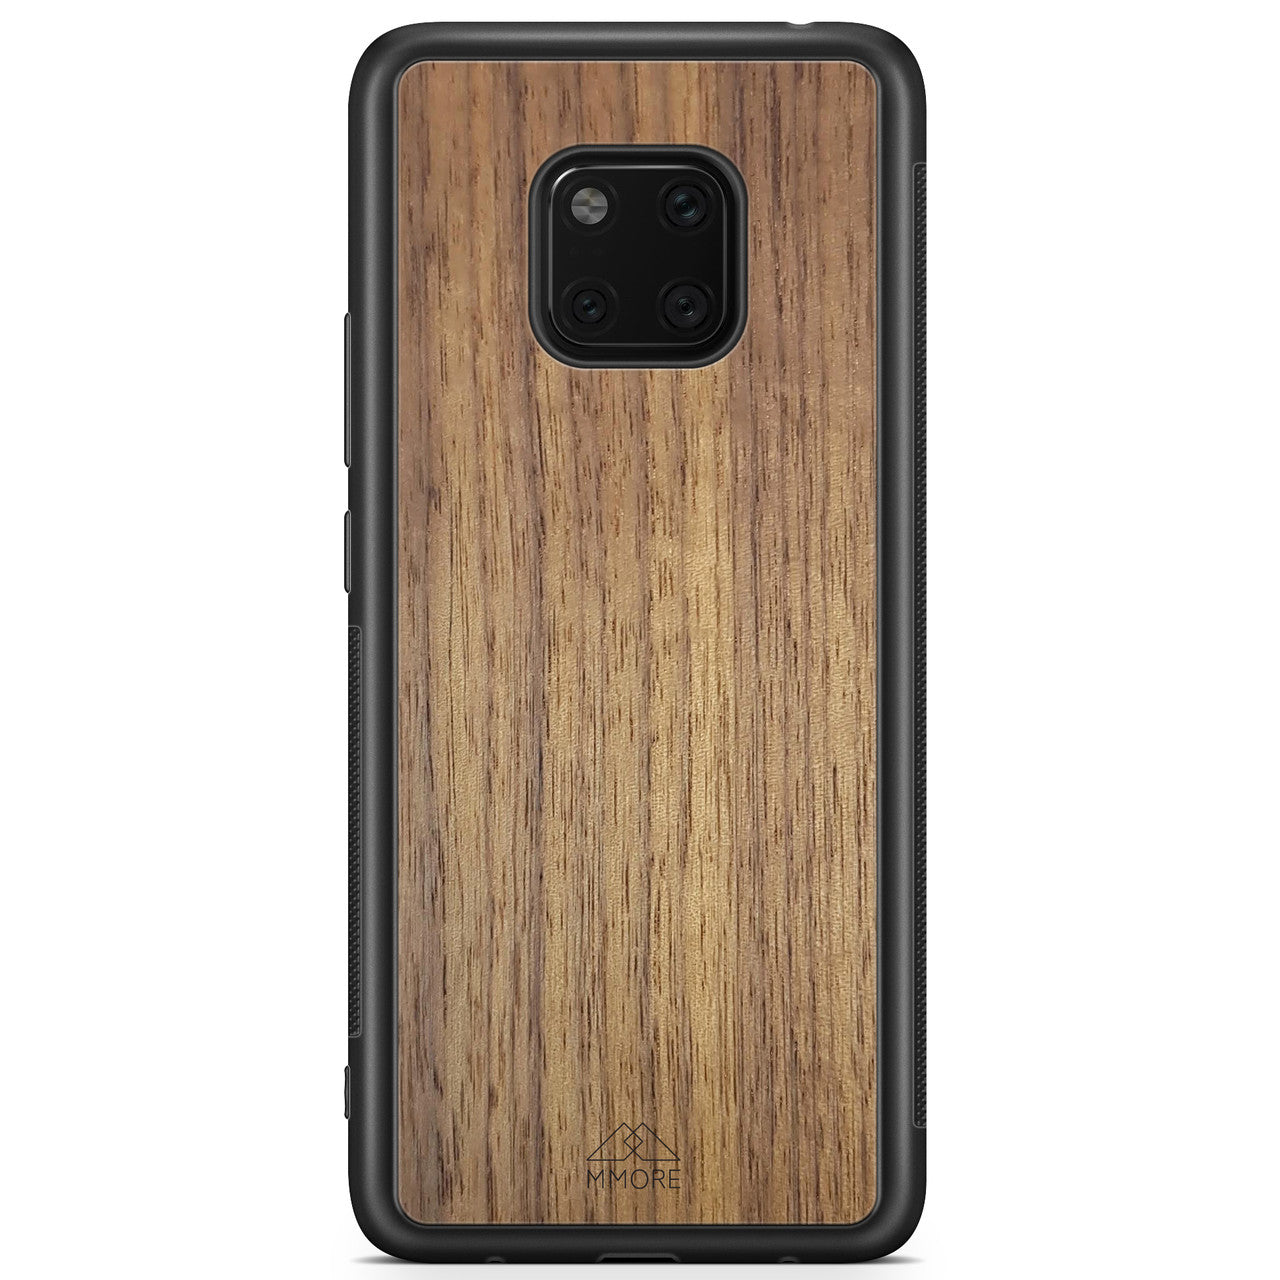 Coque de téléphone en bois véritable pour Huawei Mate 20 PRO de couleur noire fabriquée à partir de bois de noyer américainCoque de téléphone en bois de noyer américain Huawei Mate 20 Pro